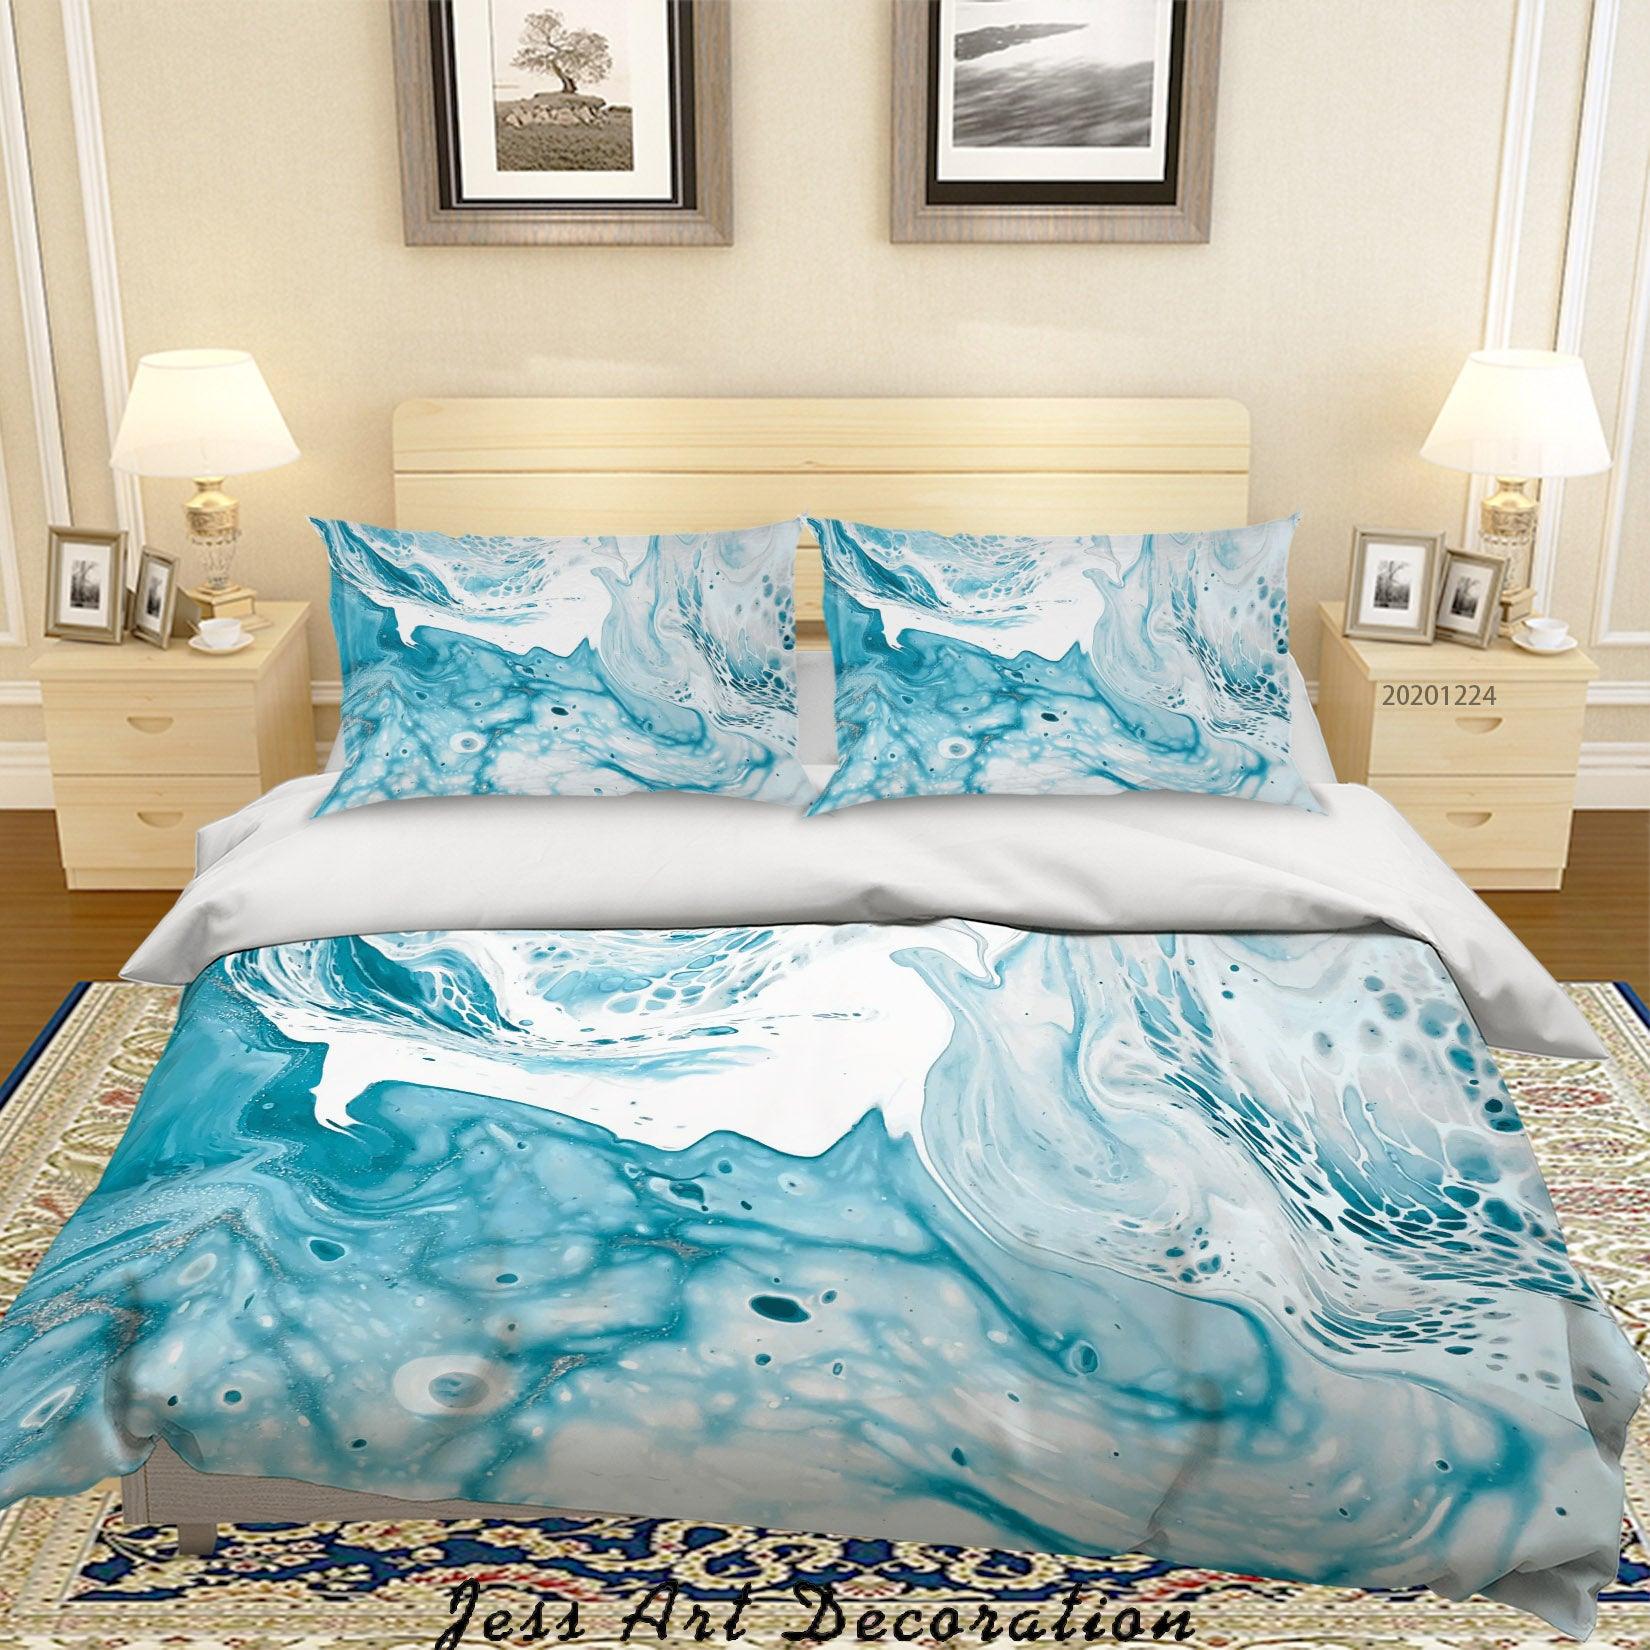 3D Watercolor Marble Texture Quilt Cover Set Bedding Set Duvet Cover Pillowcases 162 LQH- Jess Art Decoration